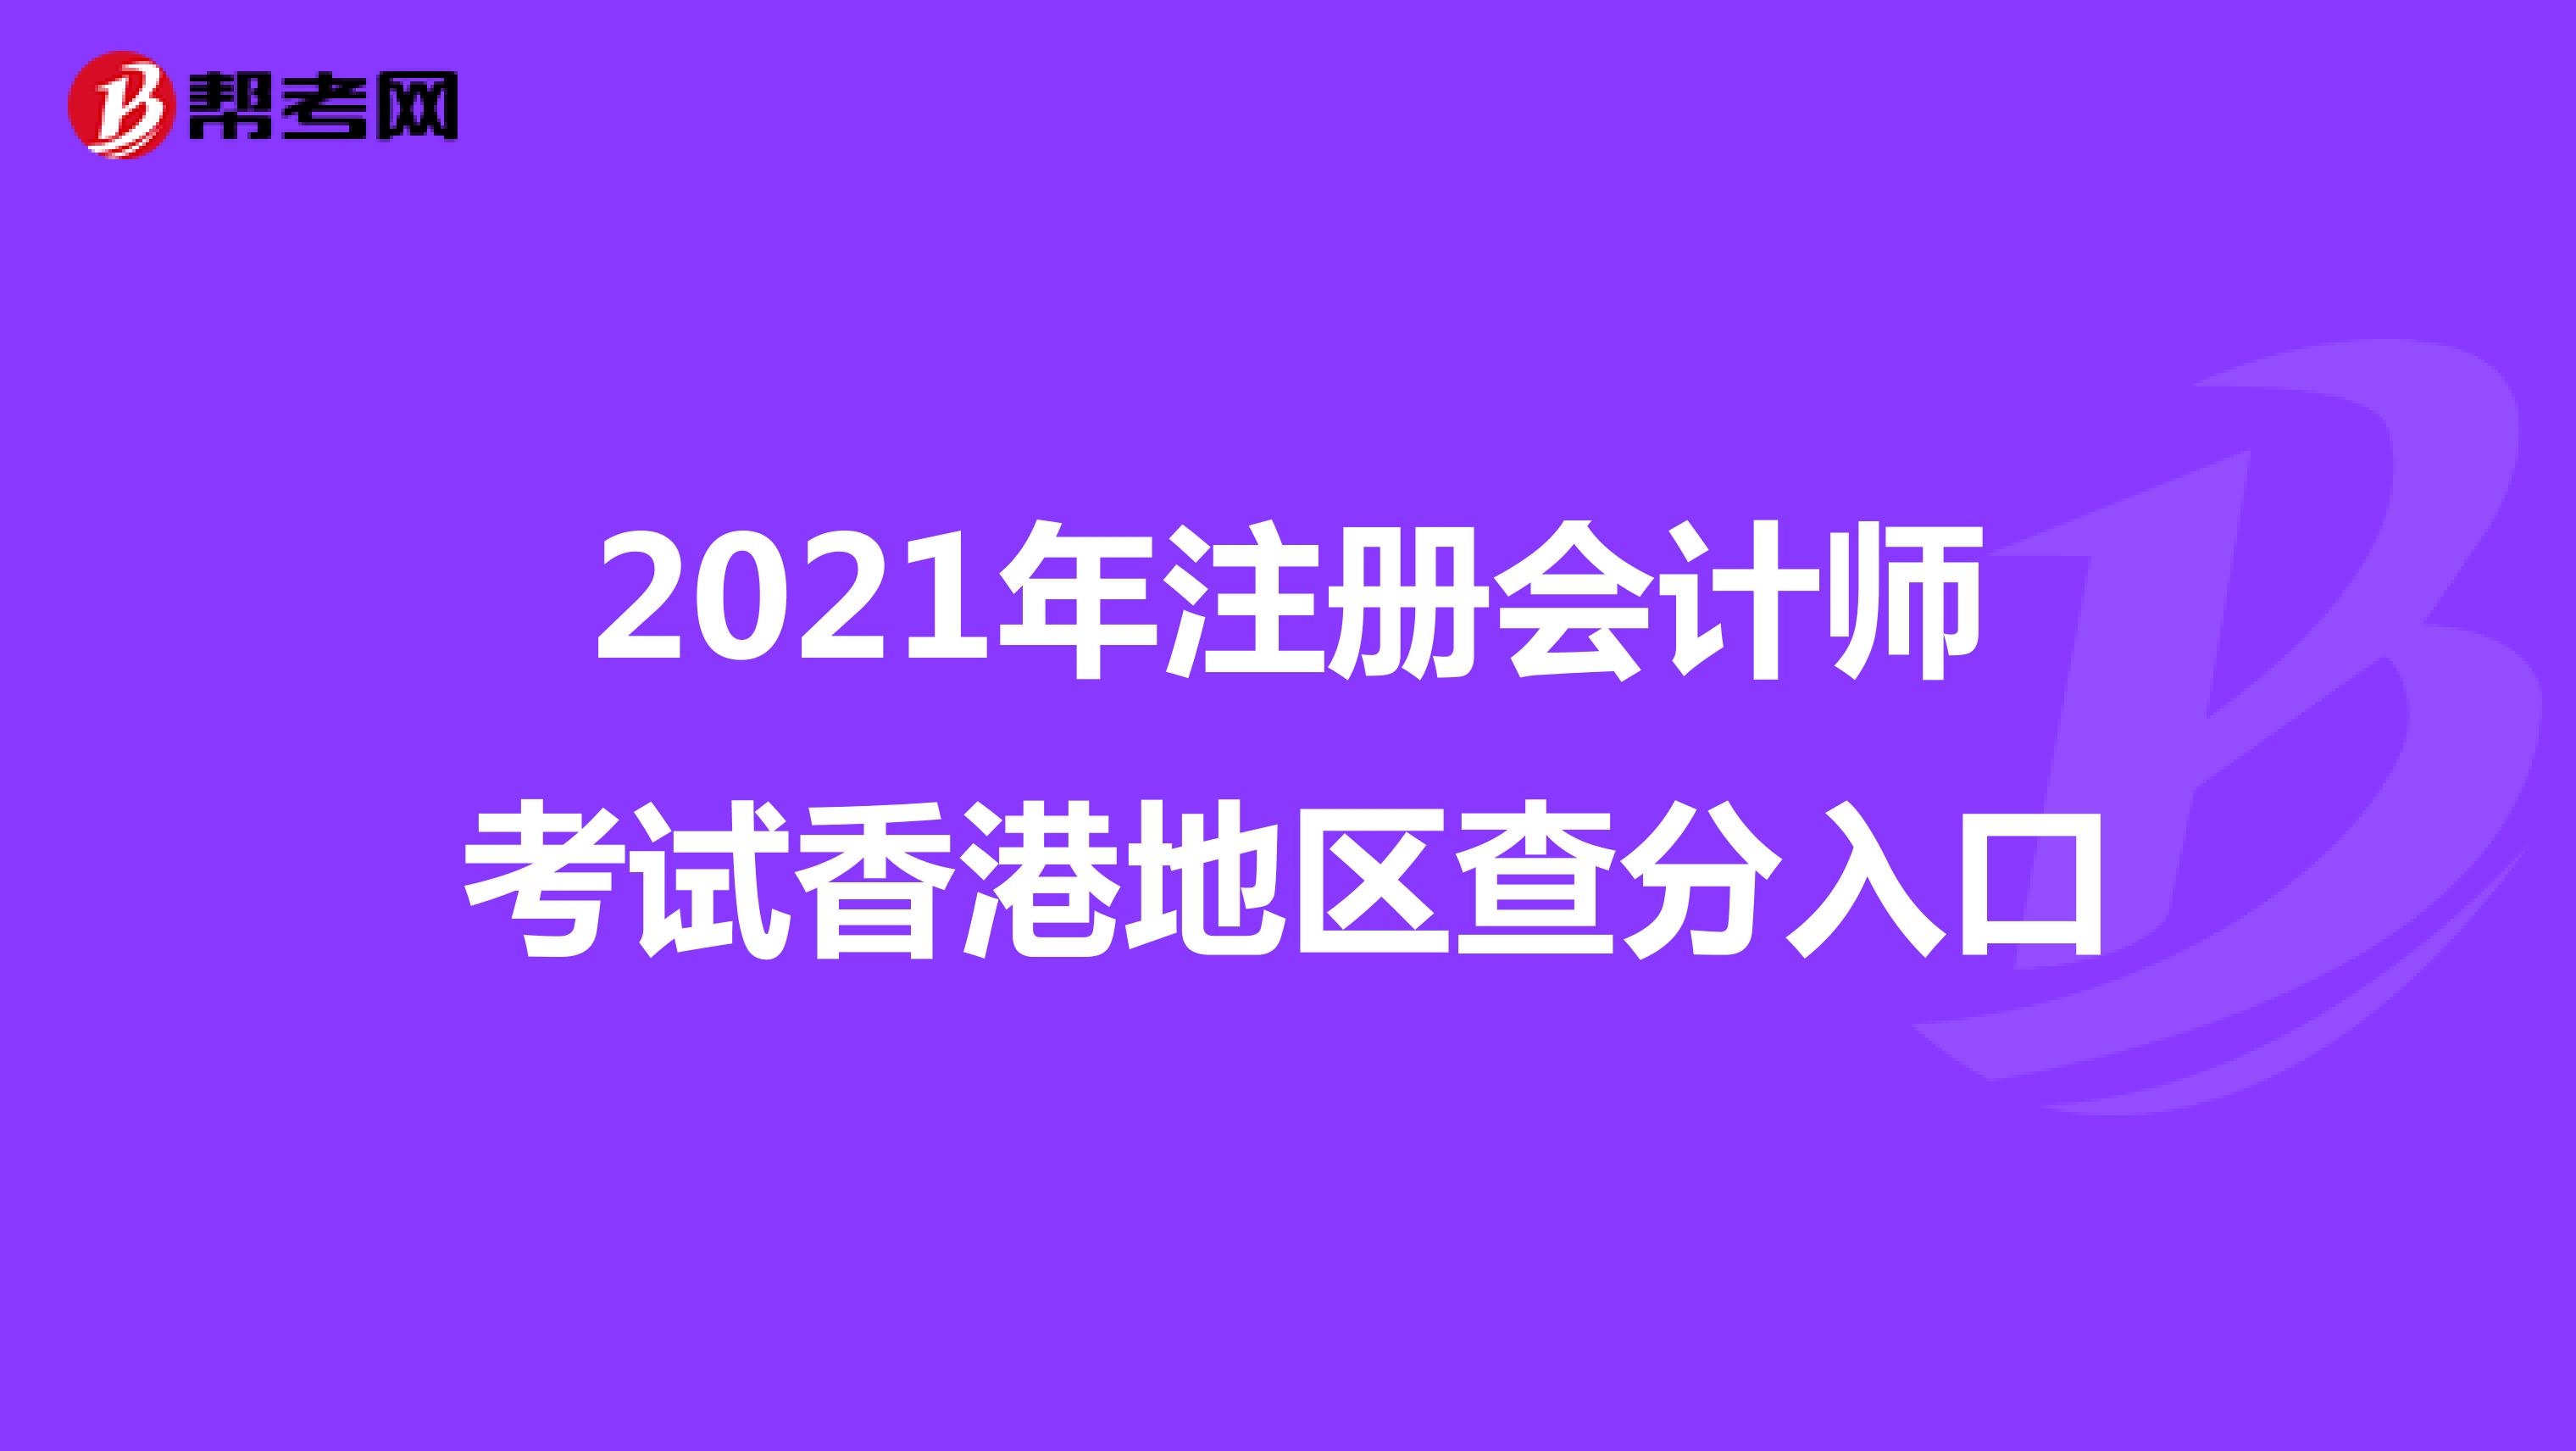 2021年注册会计师考试香港地区查分入口